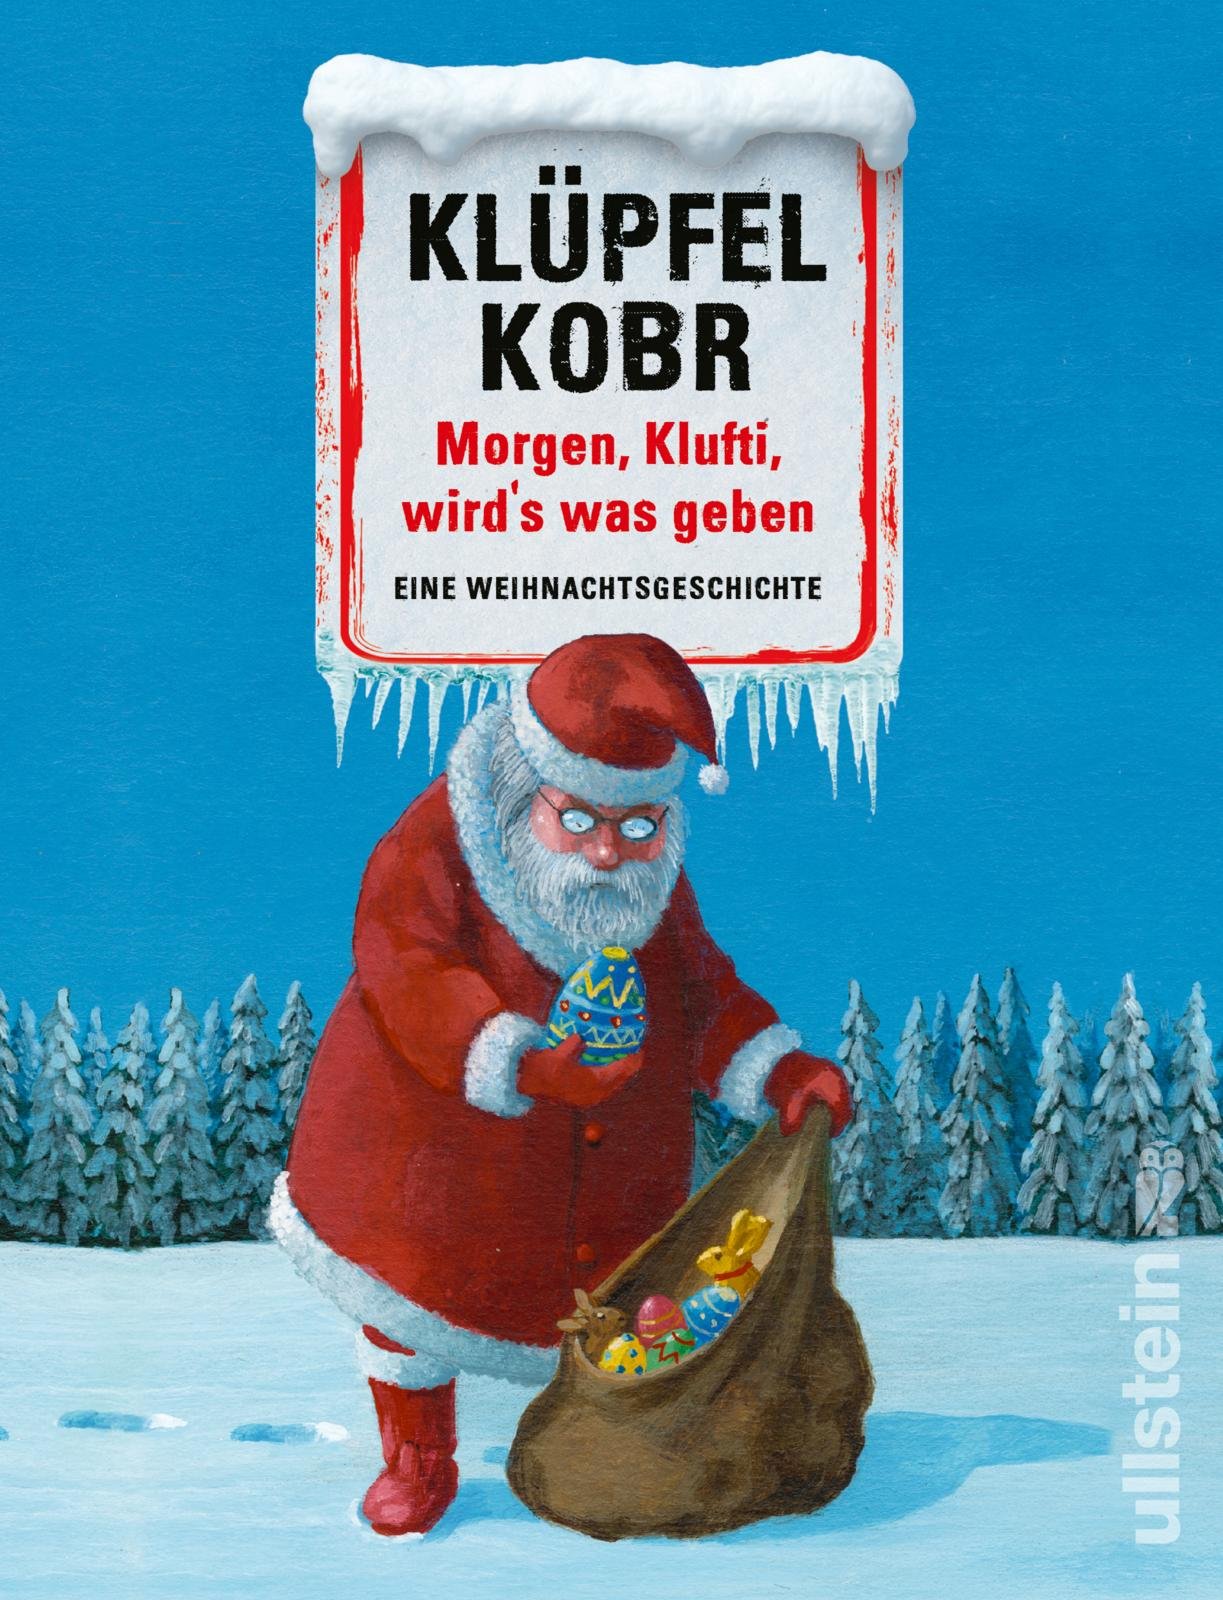 Klüpfel Kobr Morgen Klufti Weihnachtsgeschichte.jpg